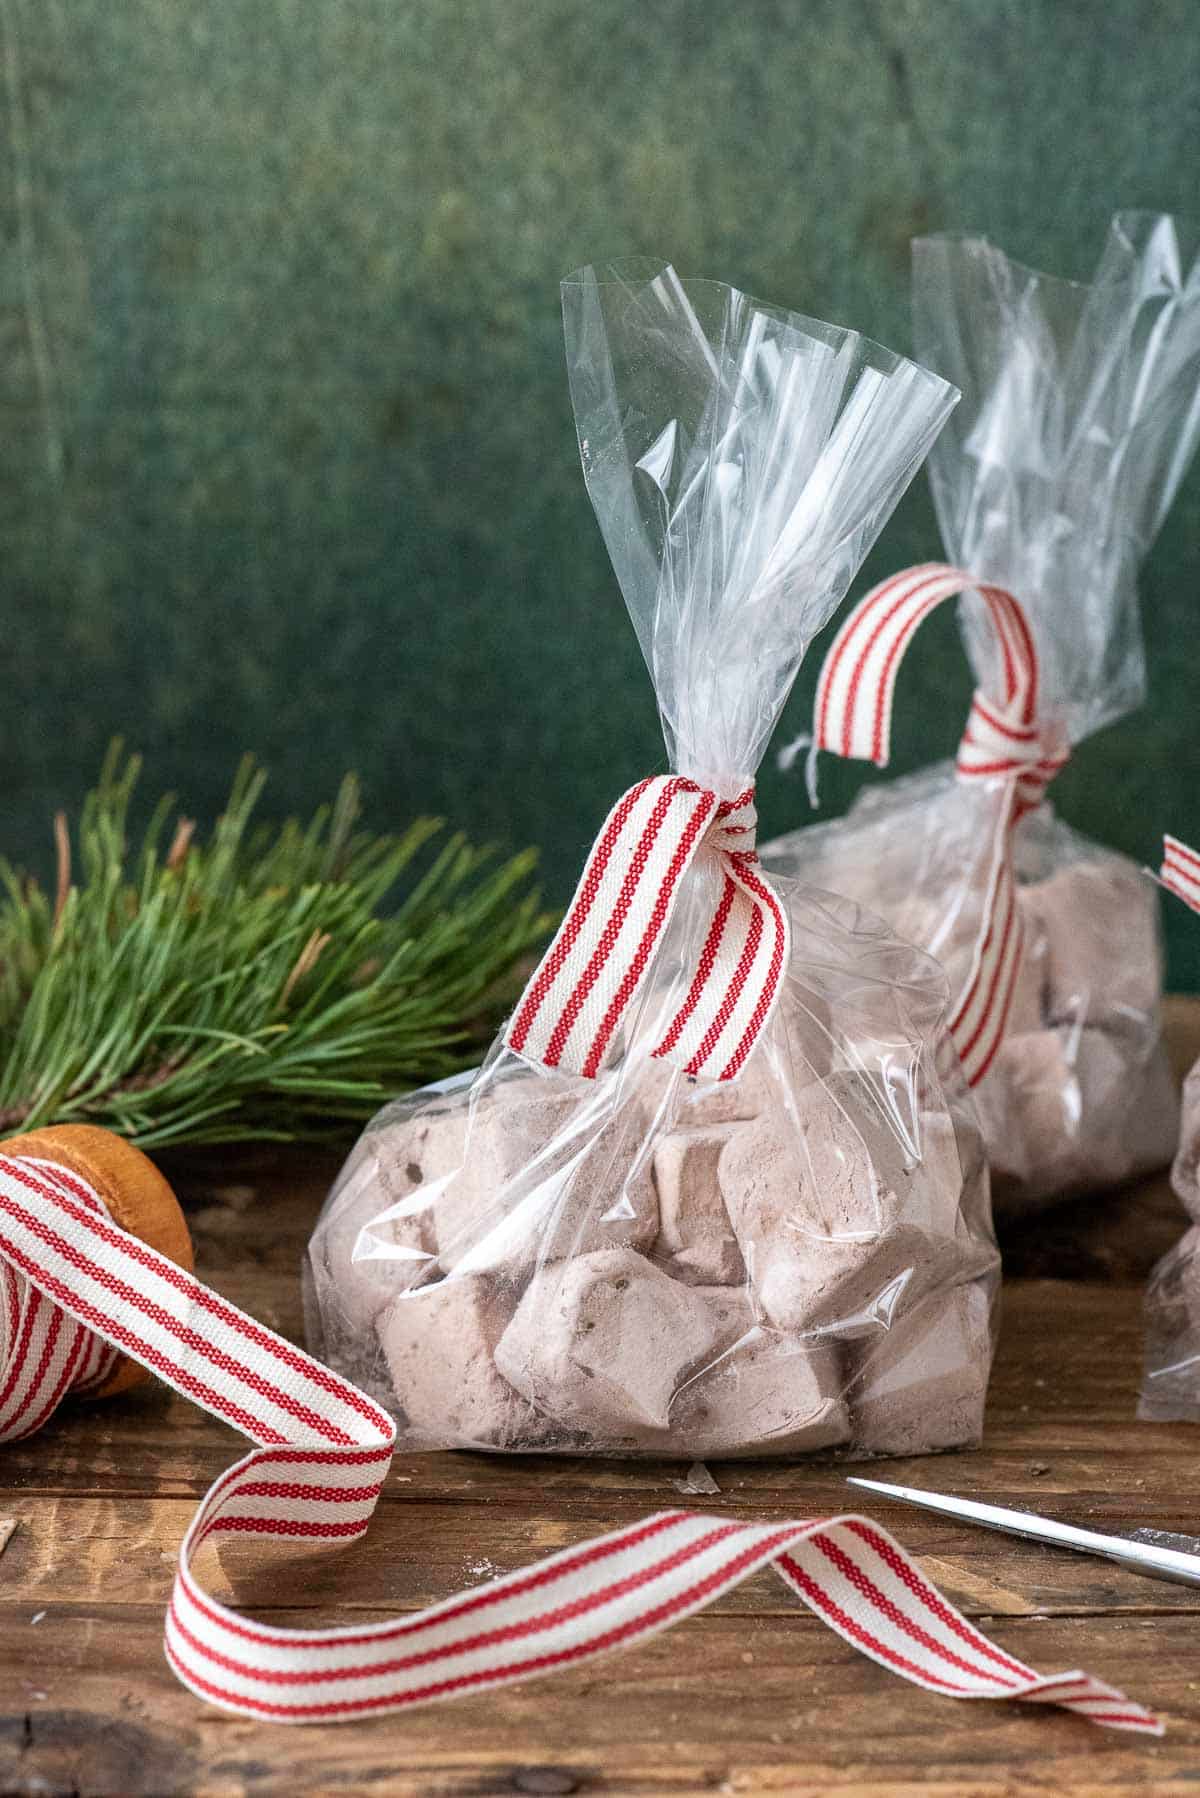 homemade marshmallows in a cellophane bag.